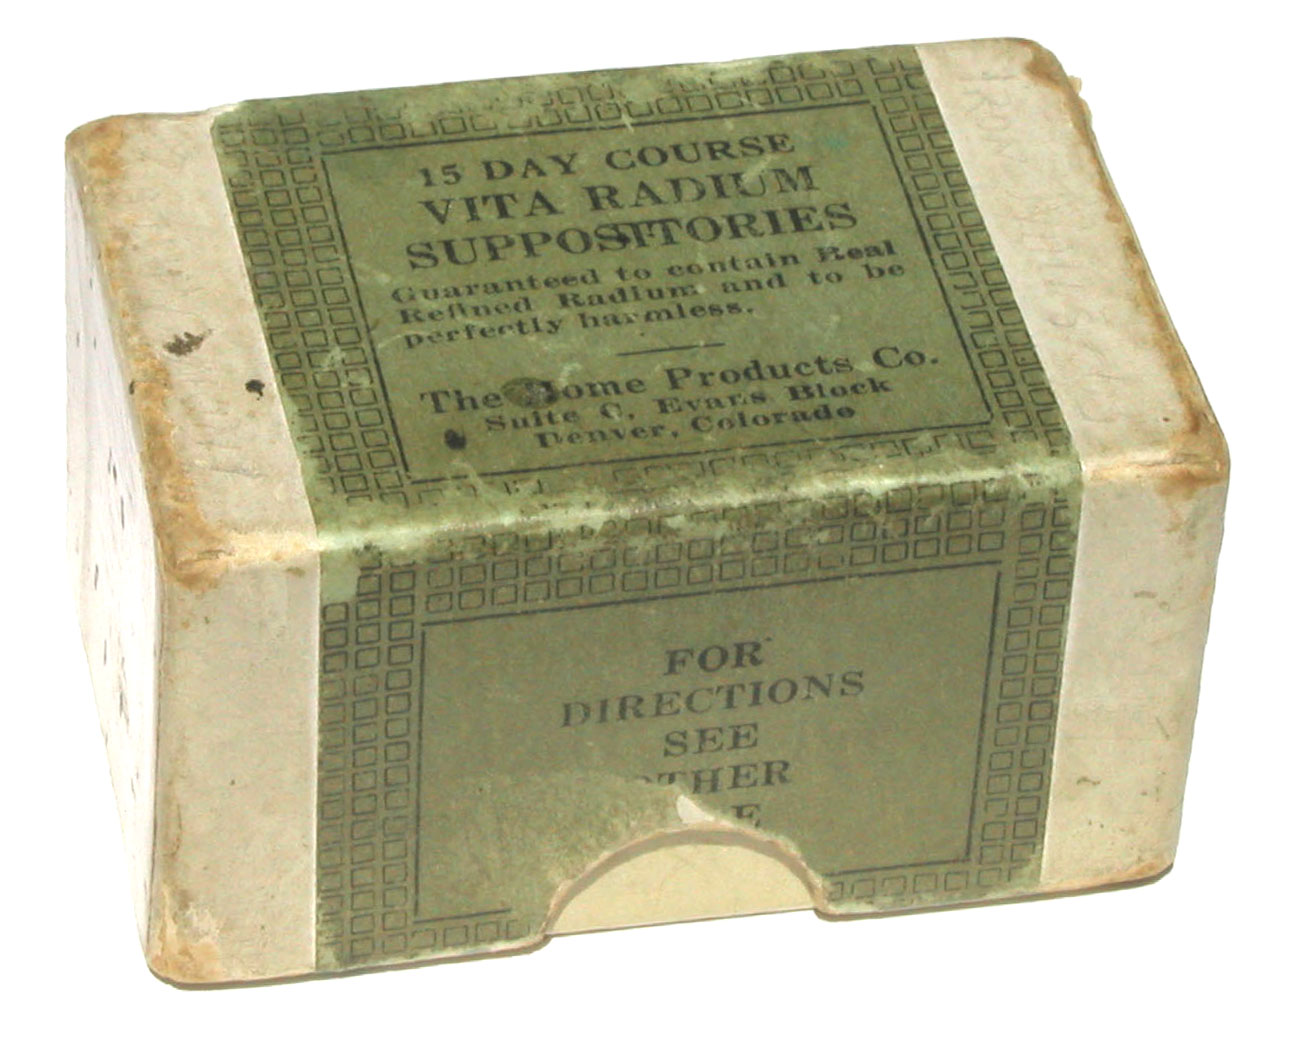 Vita Radium Suppositories (ca.1930)